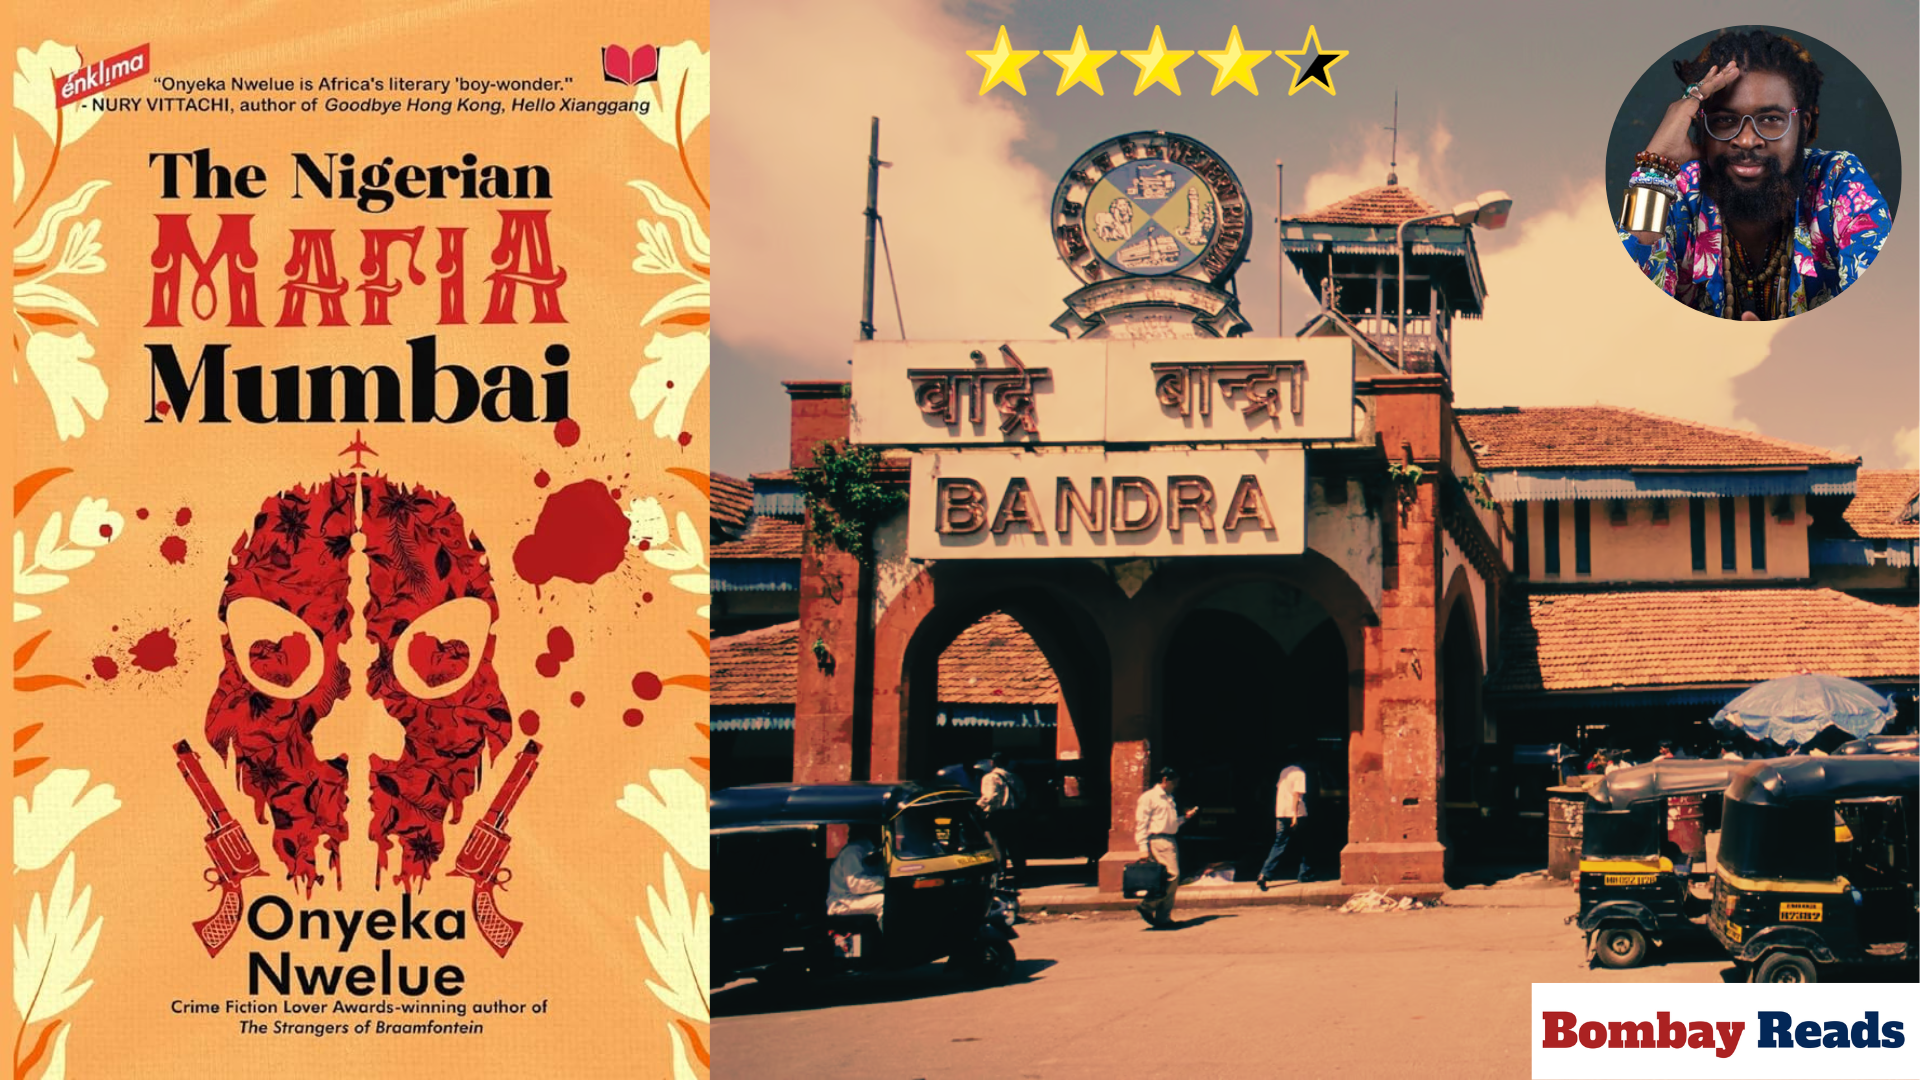 Bandra is central to the story of The Nigerian Mafia Mumbai